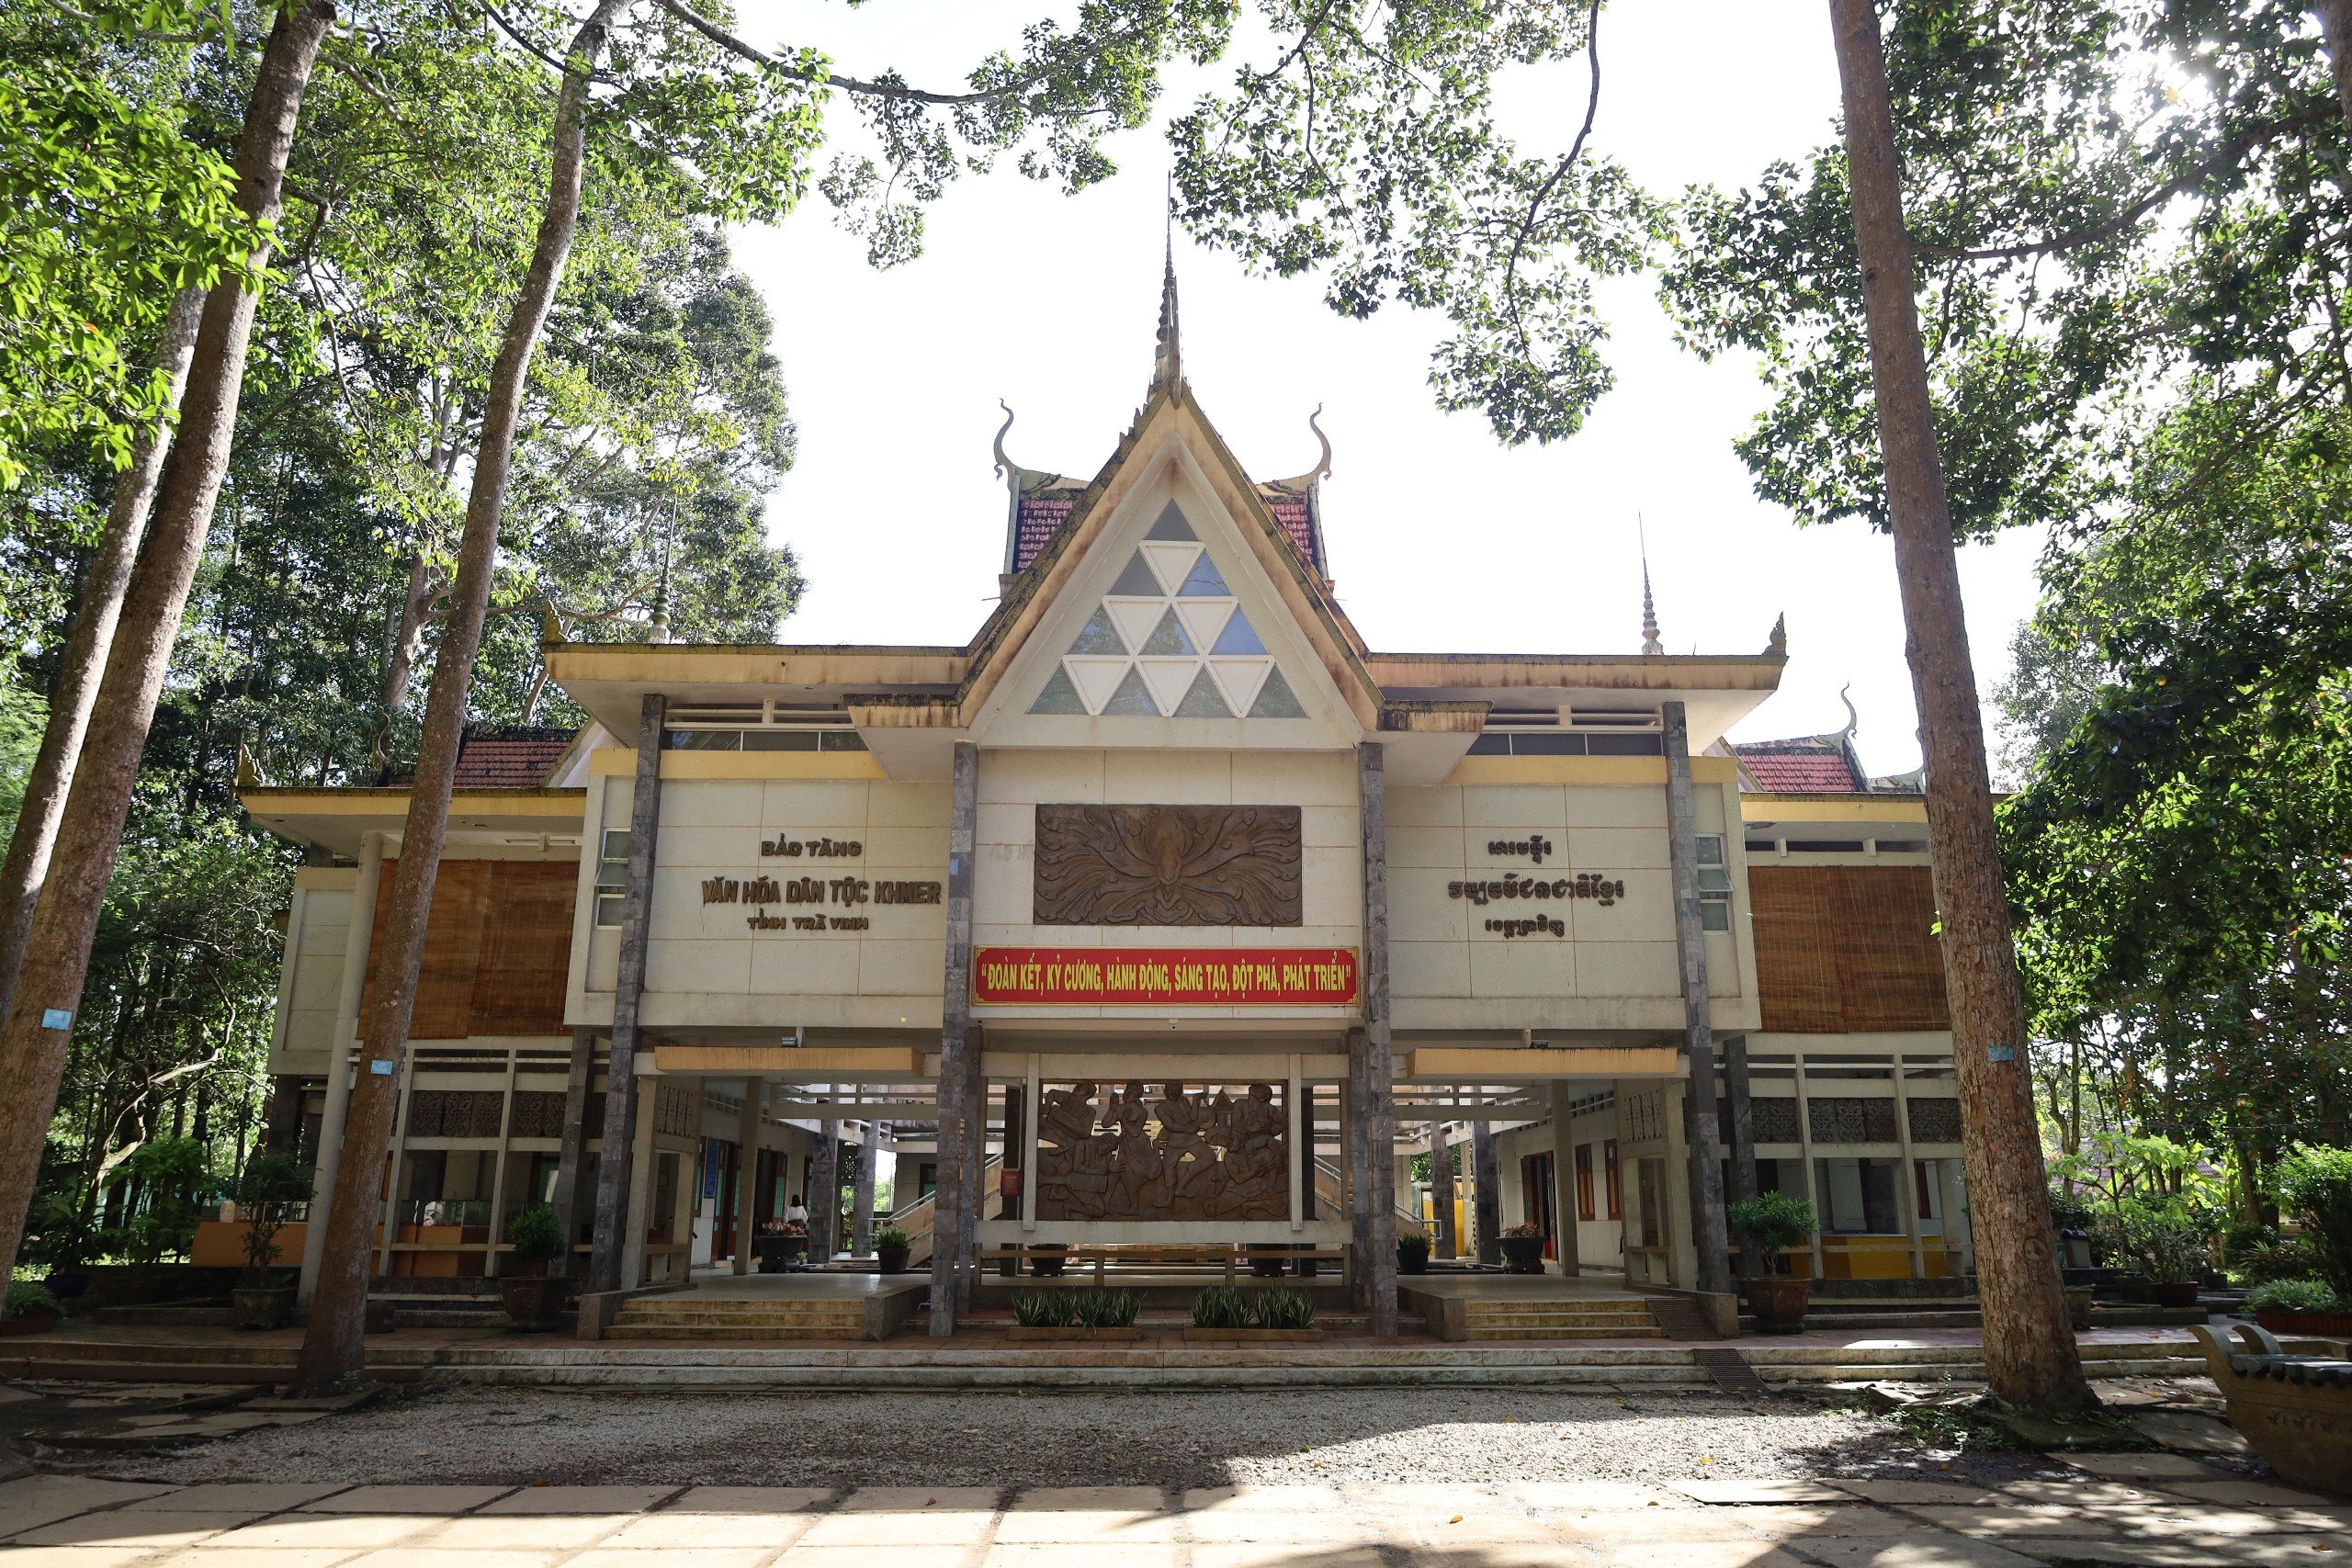 Bảo tàng Văn hóa Dân tộc Khmer tỉnh Trà Vinh trực thuộc Bảo tàng Tổng hợp Trà Vinh là một địa chỉ nghiên cứu văn hóa; địa chỉ trưng bày, giới thiệu và phát huy các giá trị văn hóa truyền thống của đồng bào dân tộc Khmer với cộng đồng các dân tộc anh em cả nước.